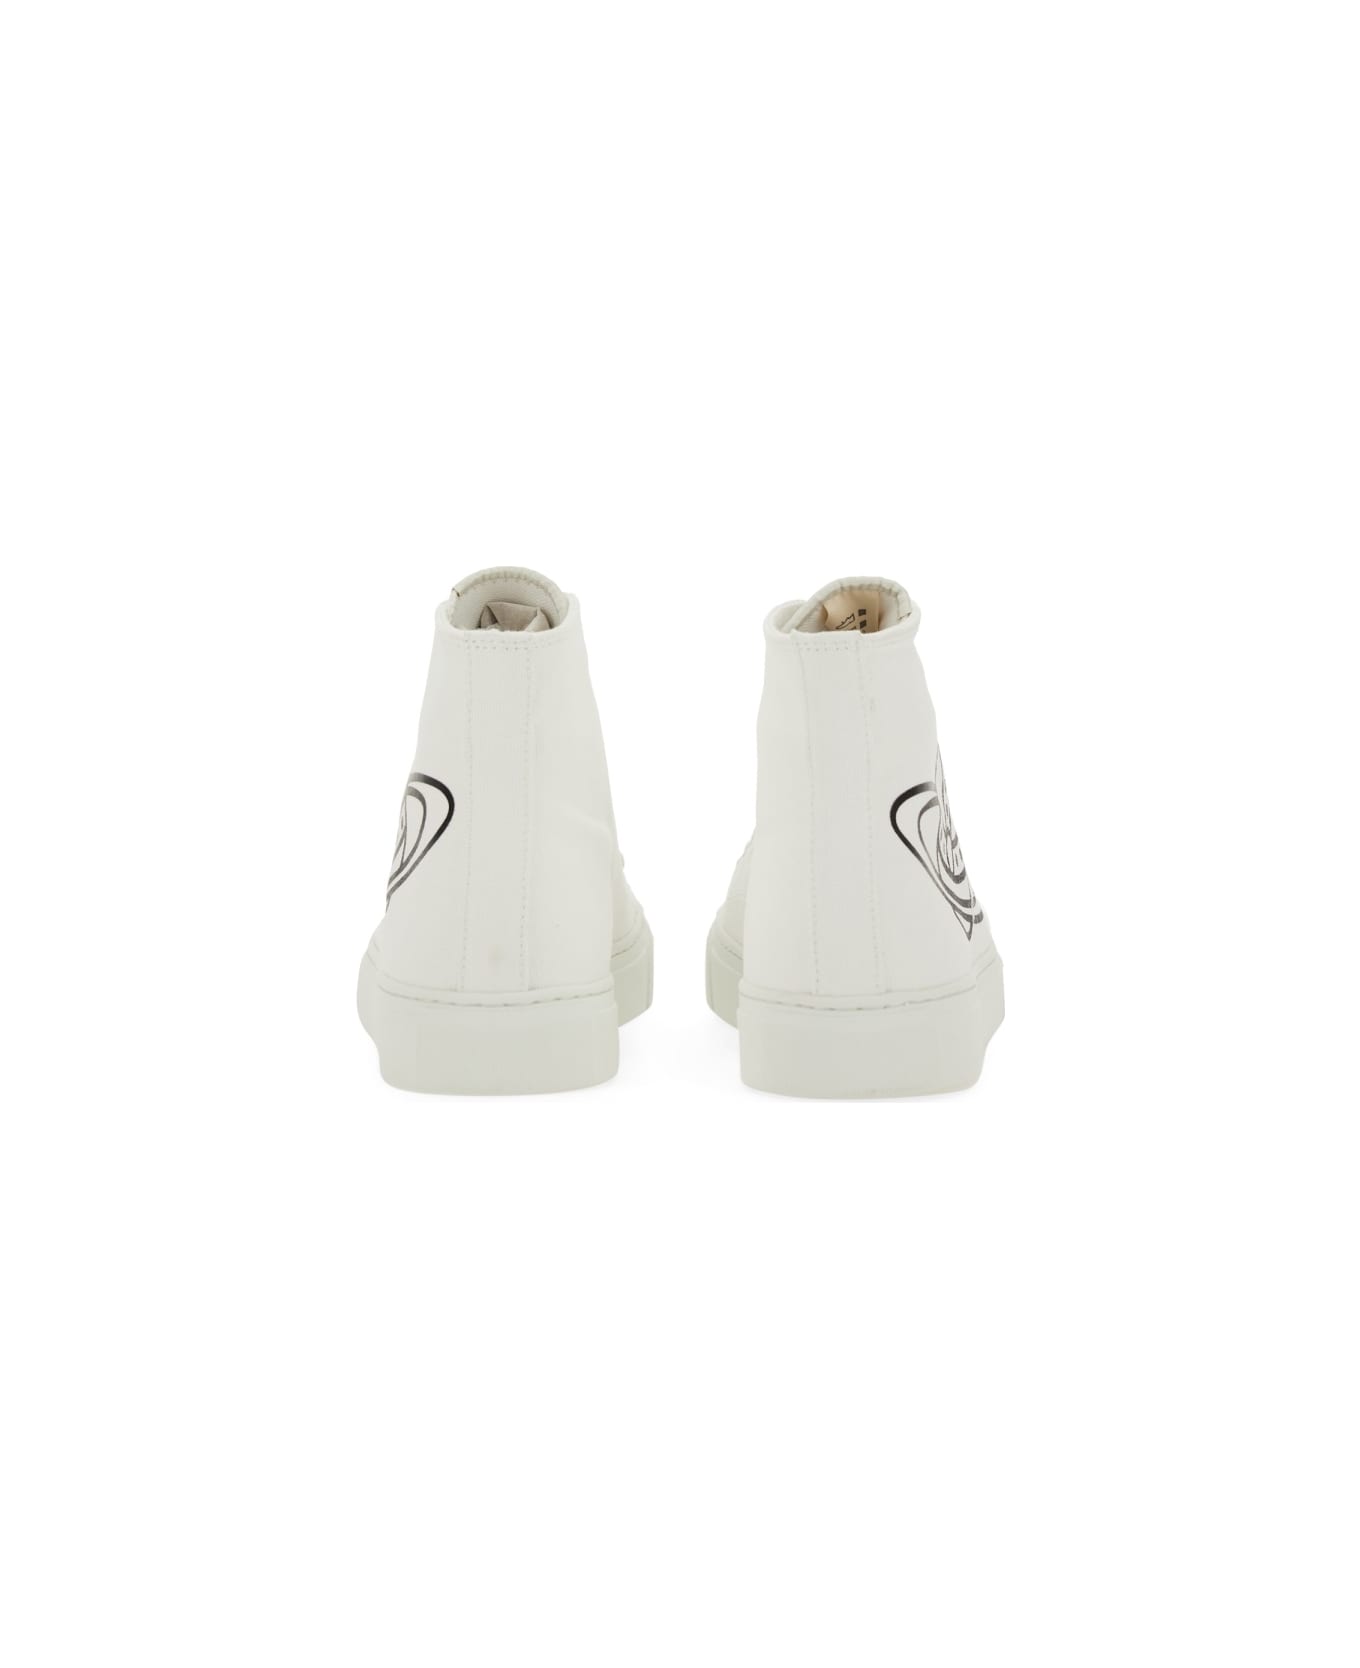 Vivienne Westwood High Top Sneaker - WHITE